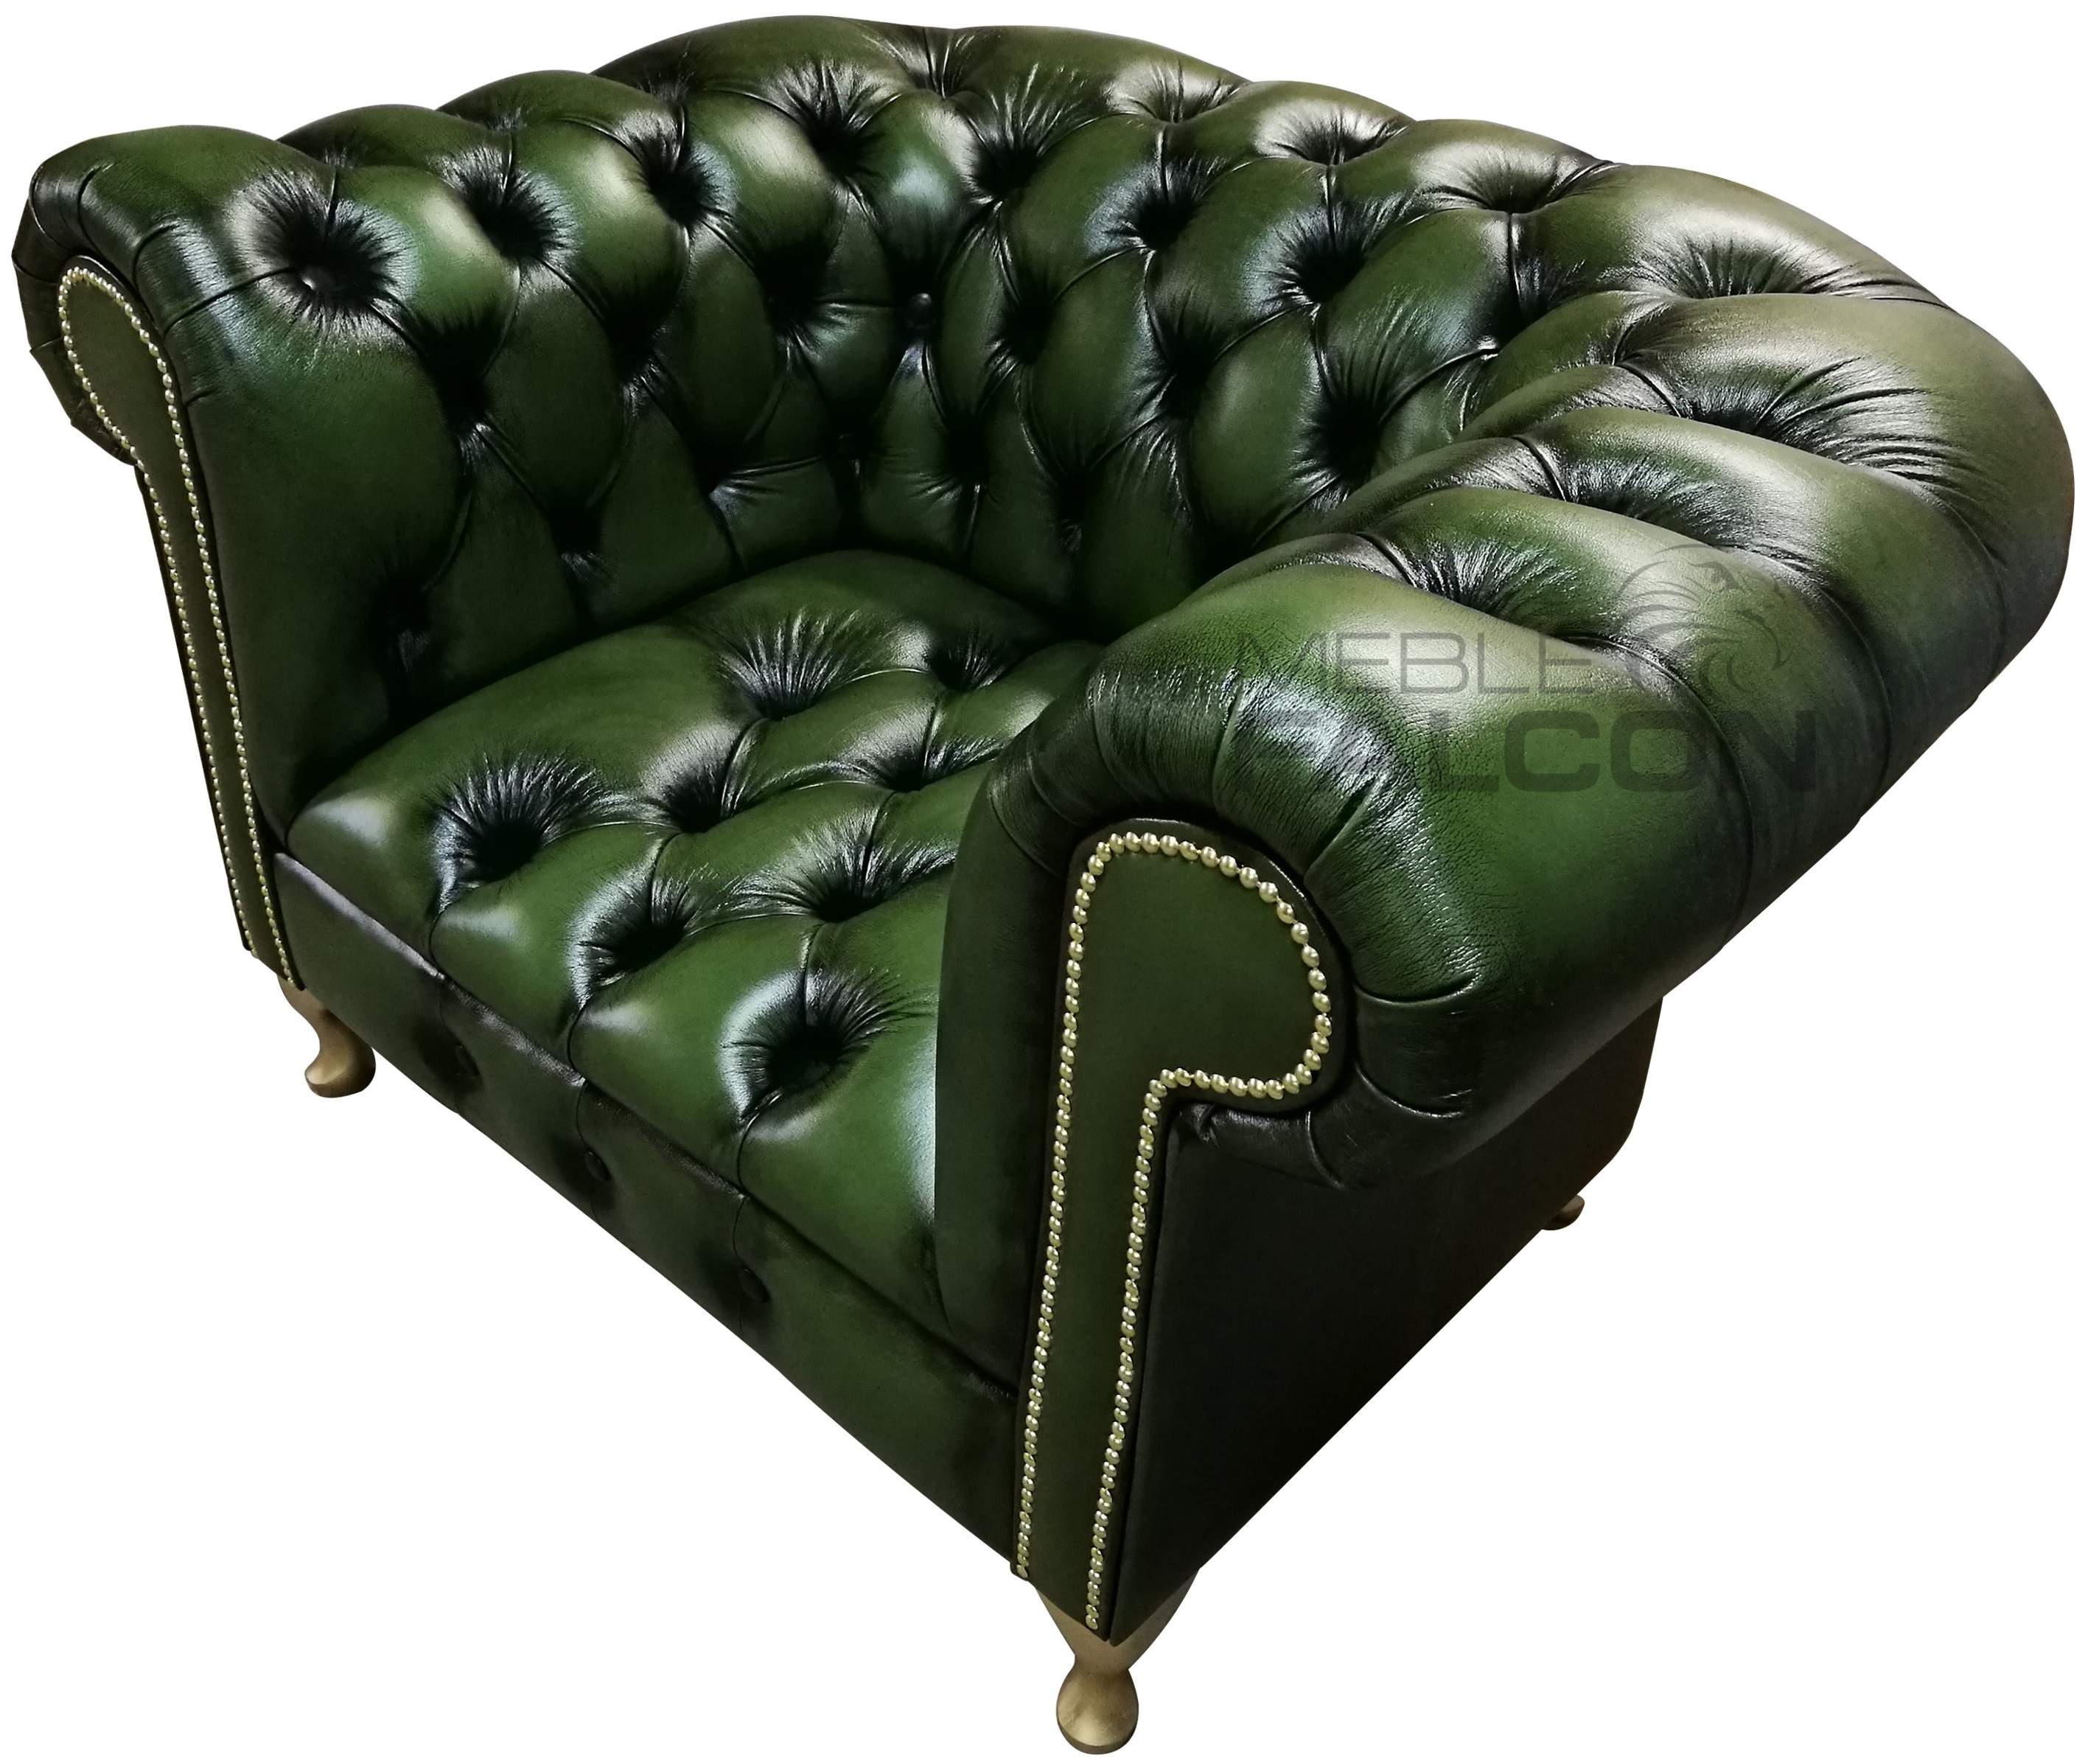 fotel pikowany chesterfield prosto od producenta tanio skóra naturalna w kolorze zielonym czarnym